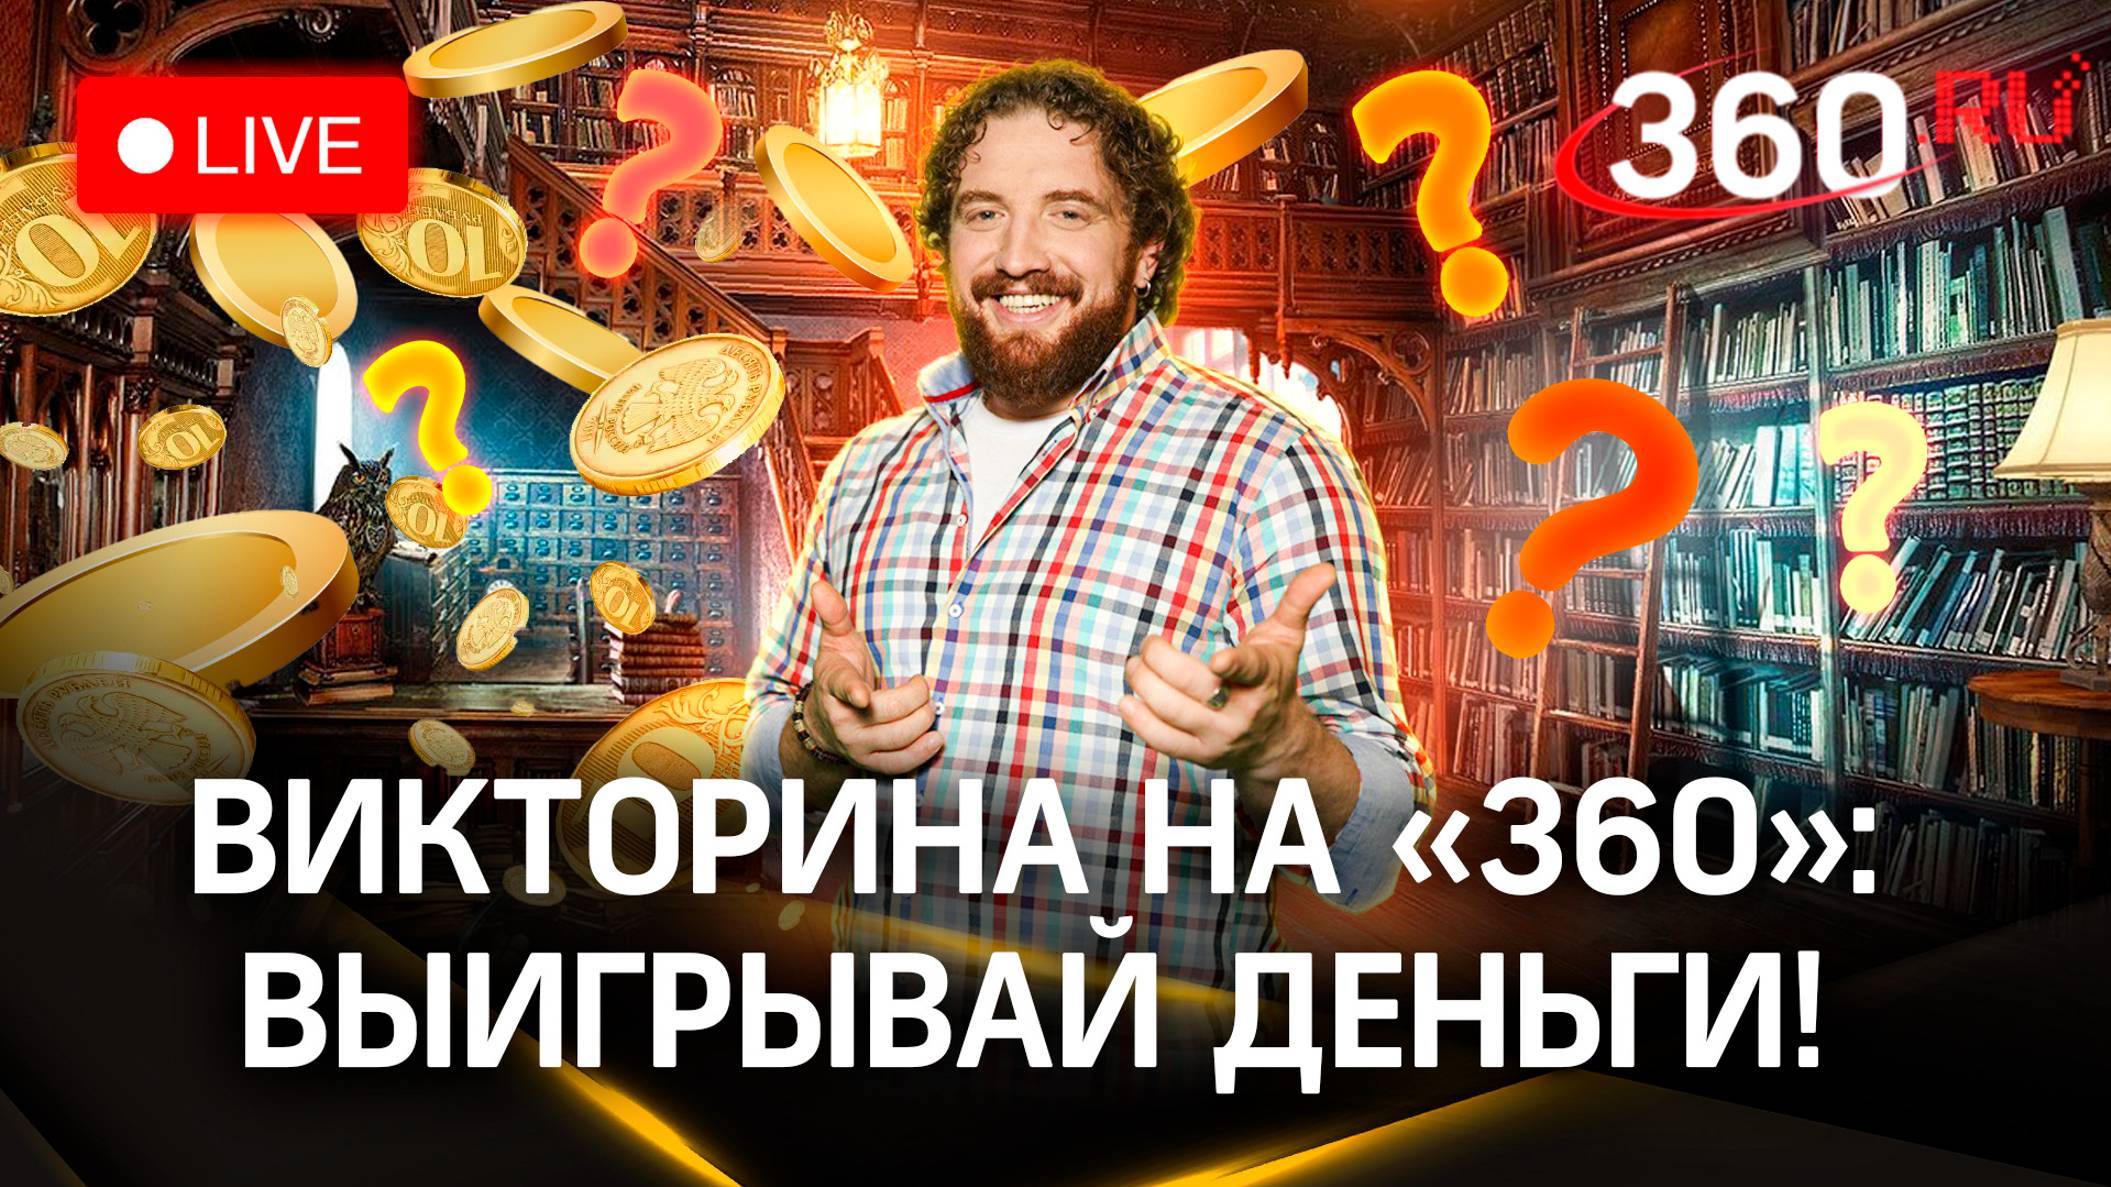 Викторина 360: отвечай и выигрывай деньги | Валентин Катаев